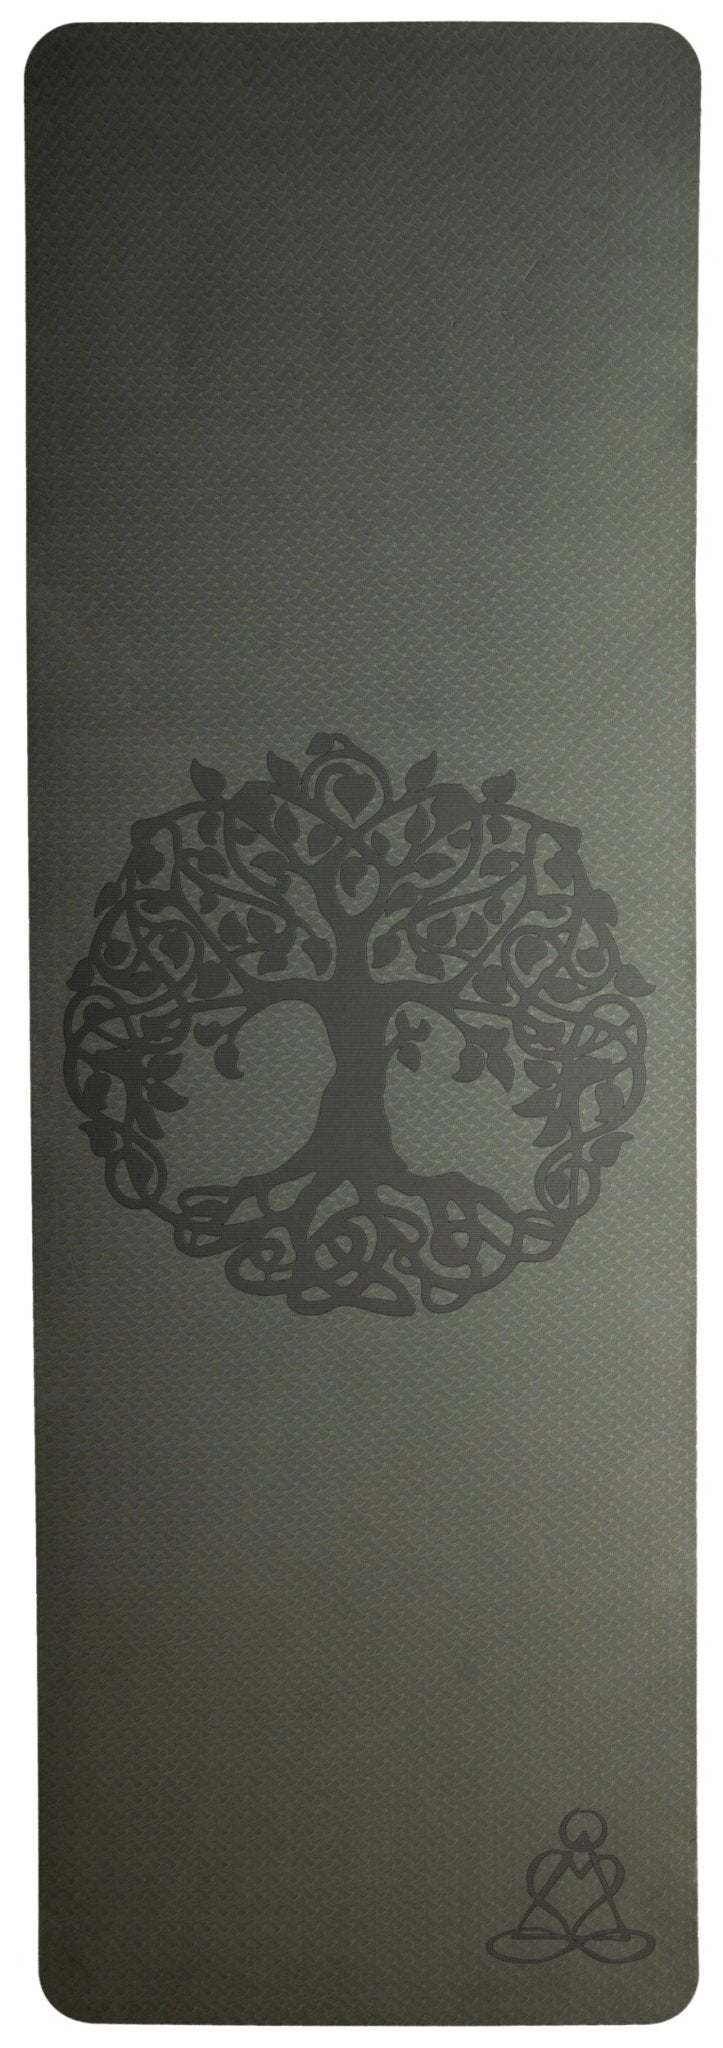 Yogamatte TPE ecofriendly - dunkelgrün/ hellgrün mit Baum des Lebens - Das Raeucherwerk